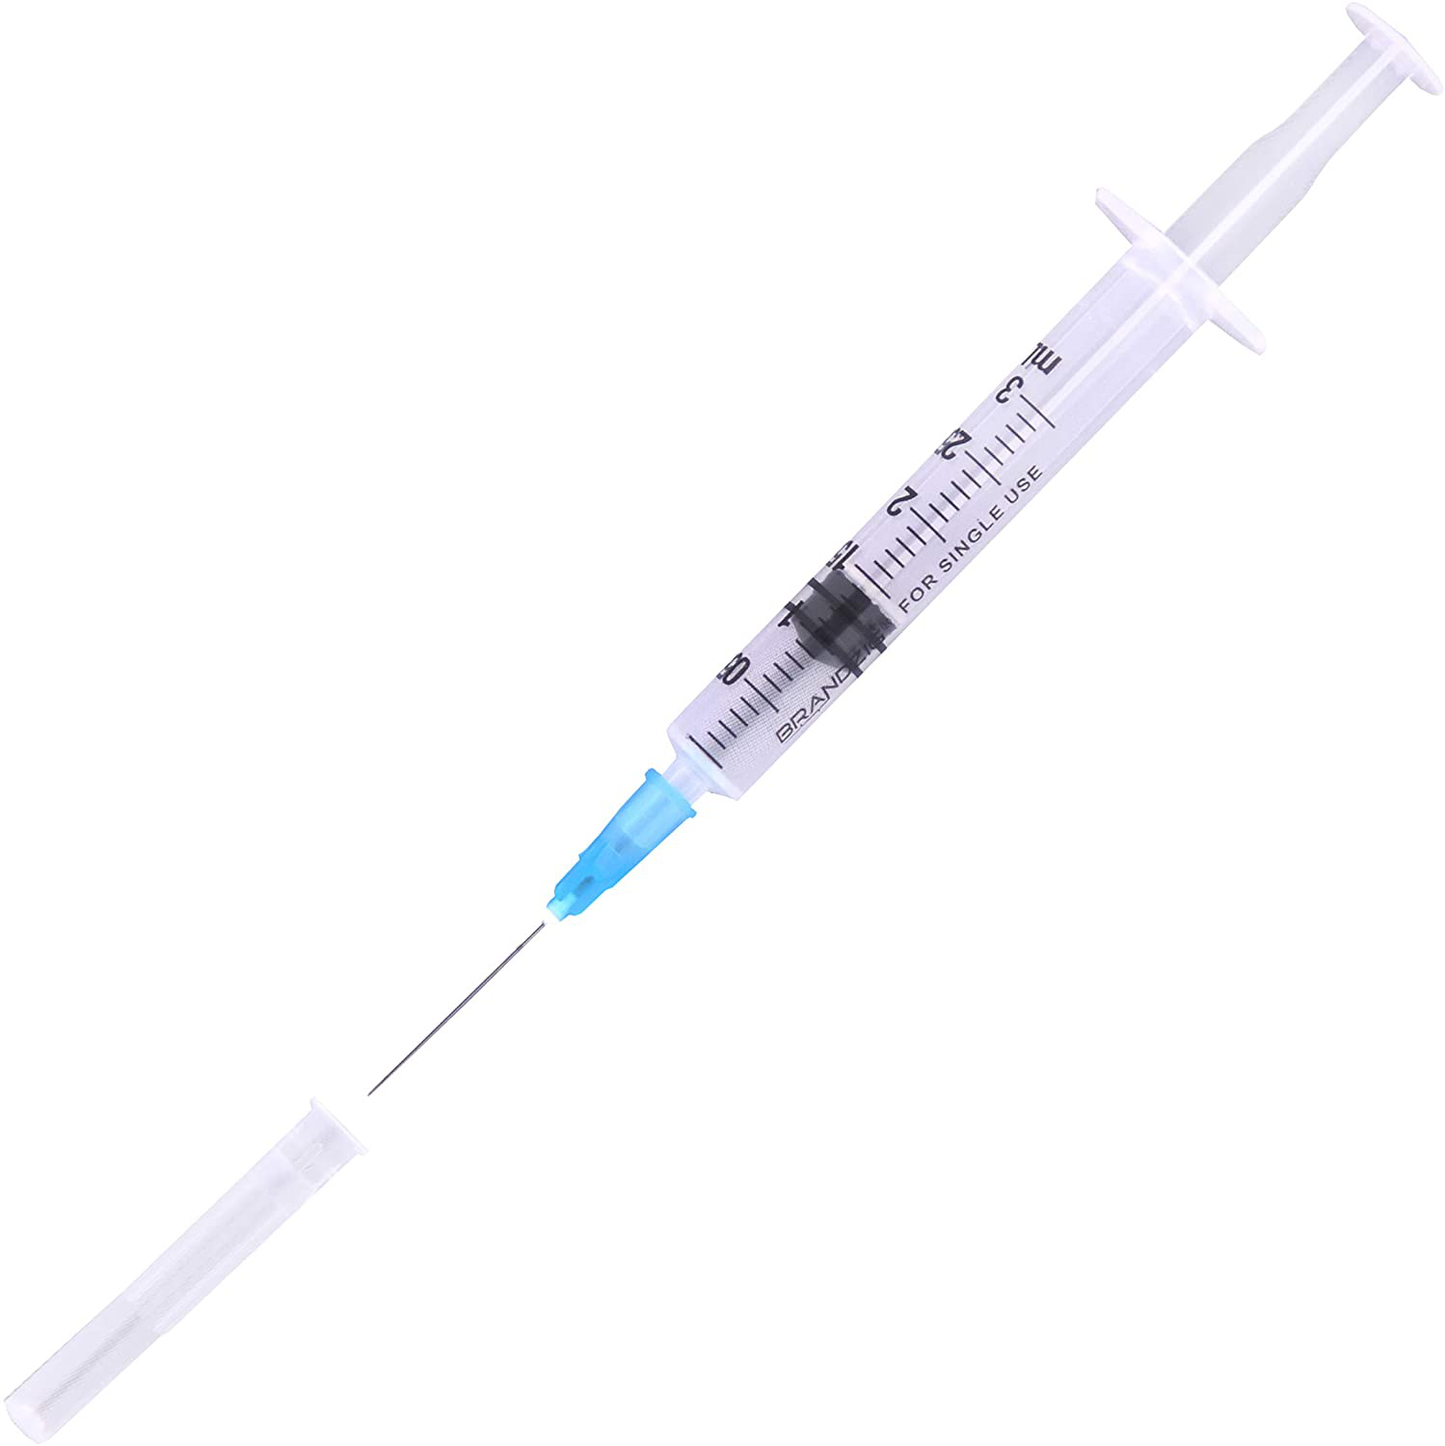 Brandzig 3ml Syringe with Needle  - 23G, 1" Needle (100-Pack)